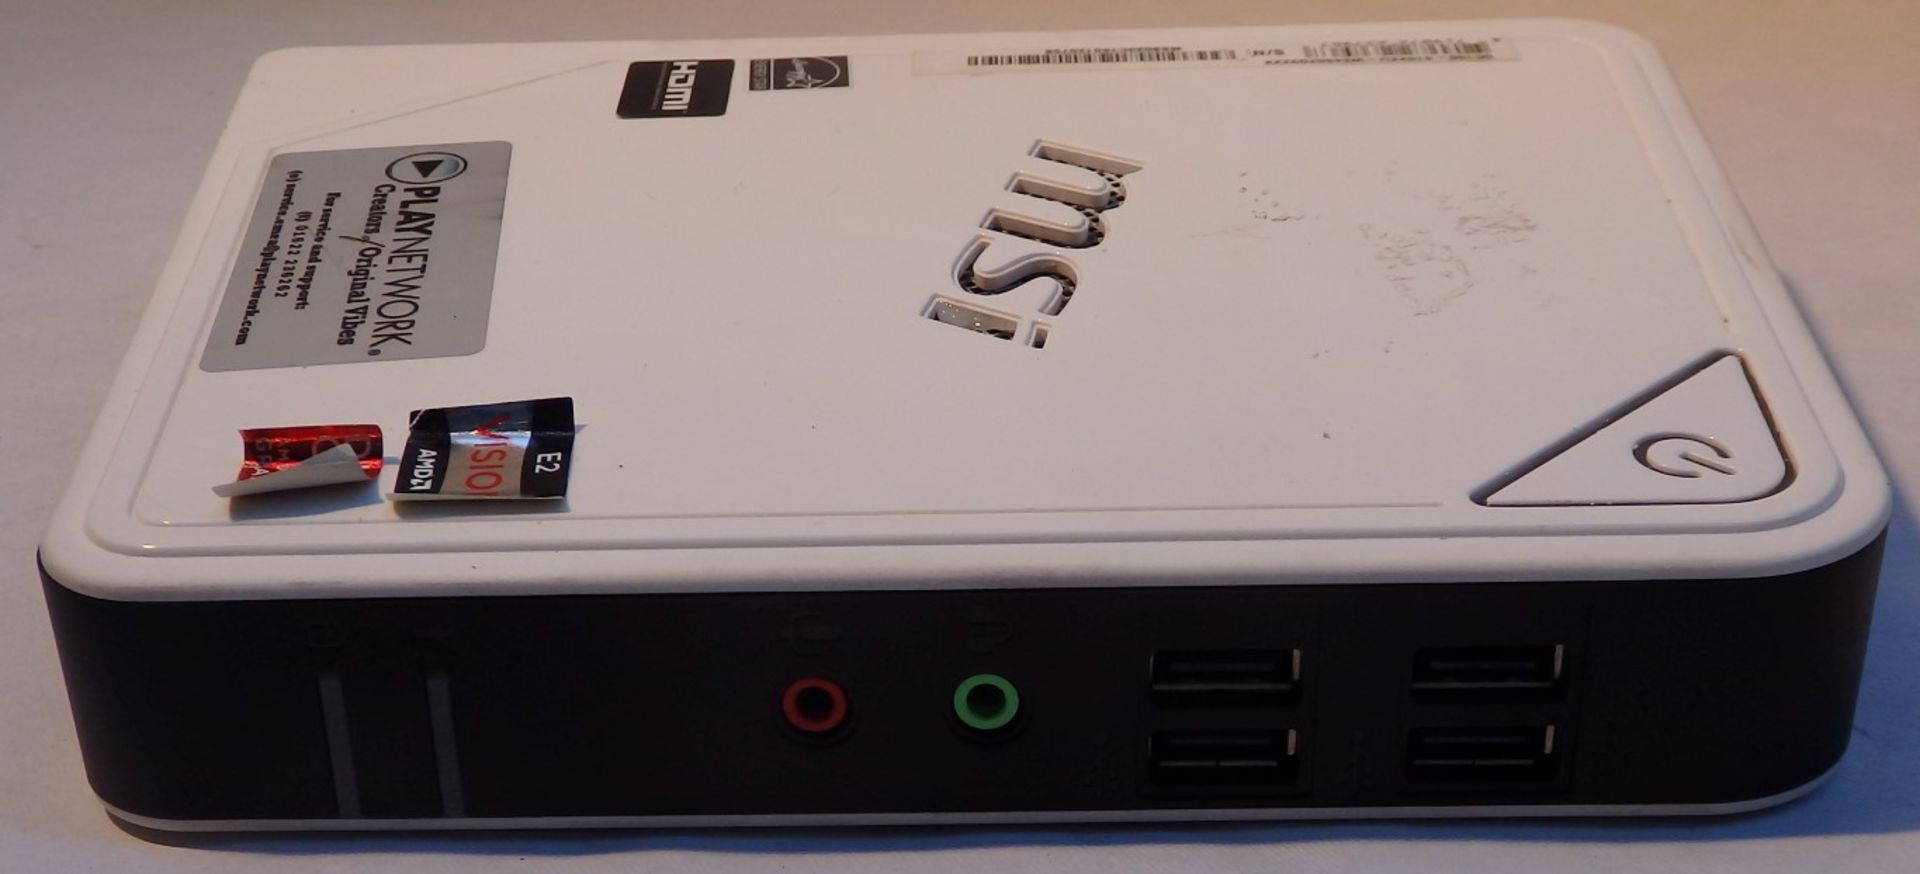 1 x MSI Wind Box DC100 Mini PC Computer – Model : MS-B023 - AMD Brazos Dual Core E-450 (1.65GHz) - - Image 10 of 10